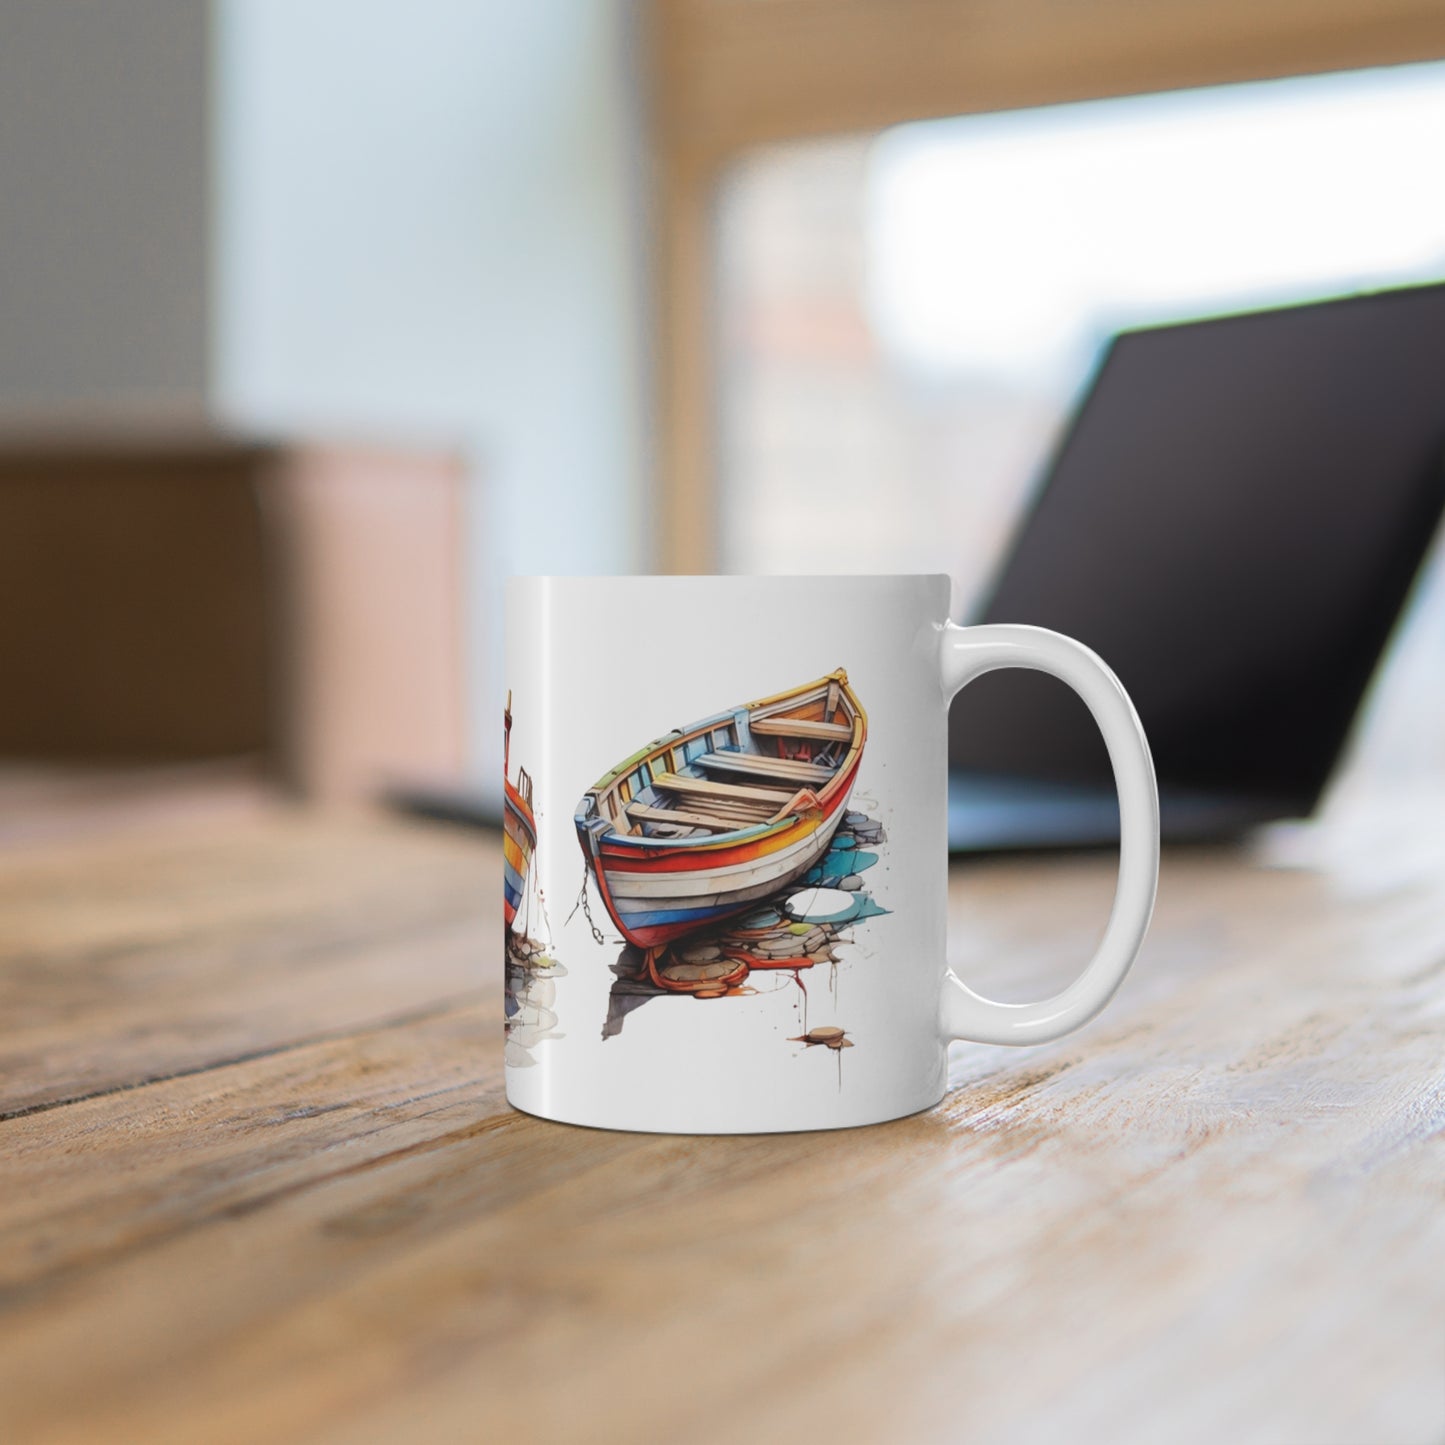 Colourful Boats Mug - Ceramic Coffee Mug 11oz